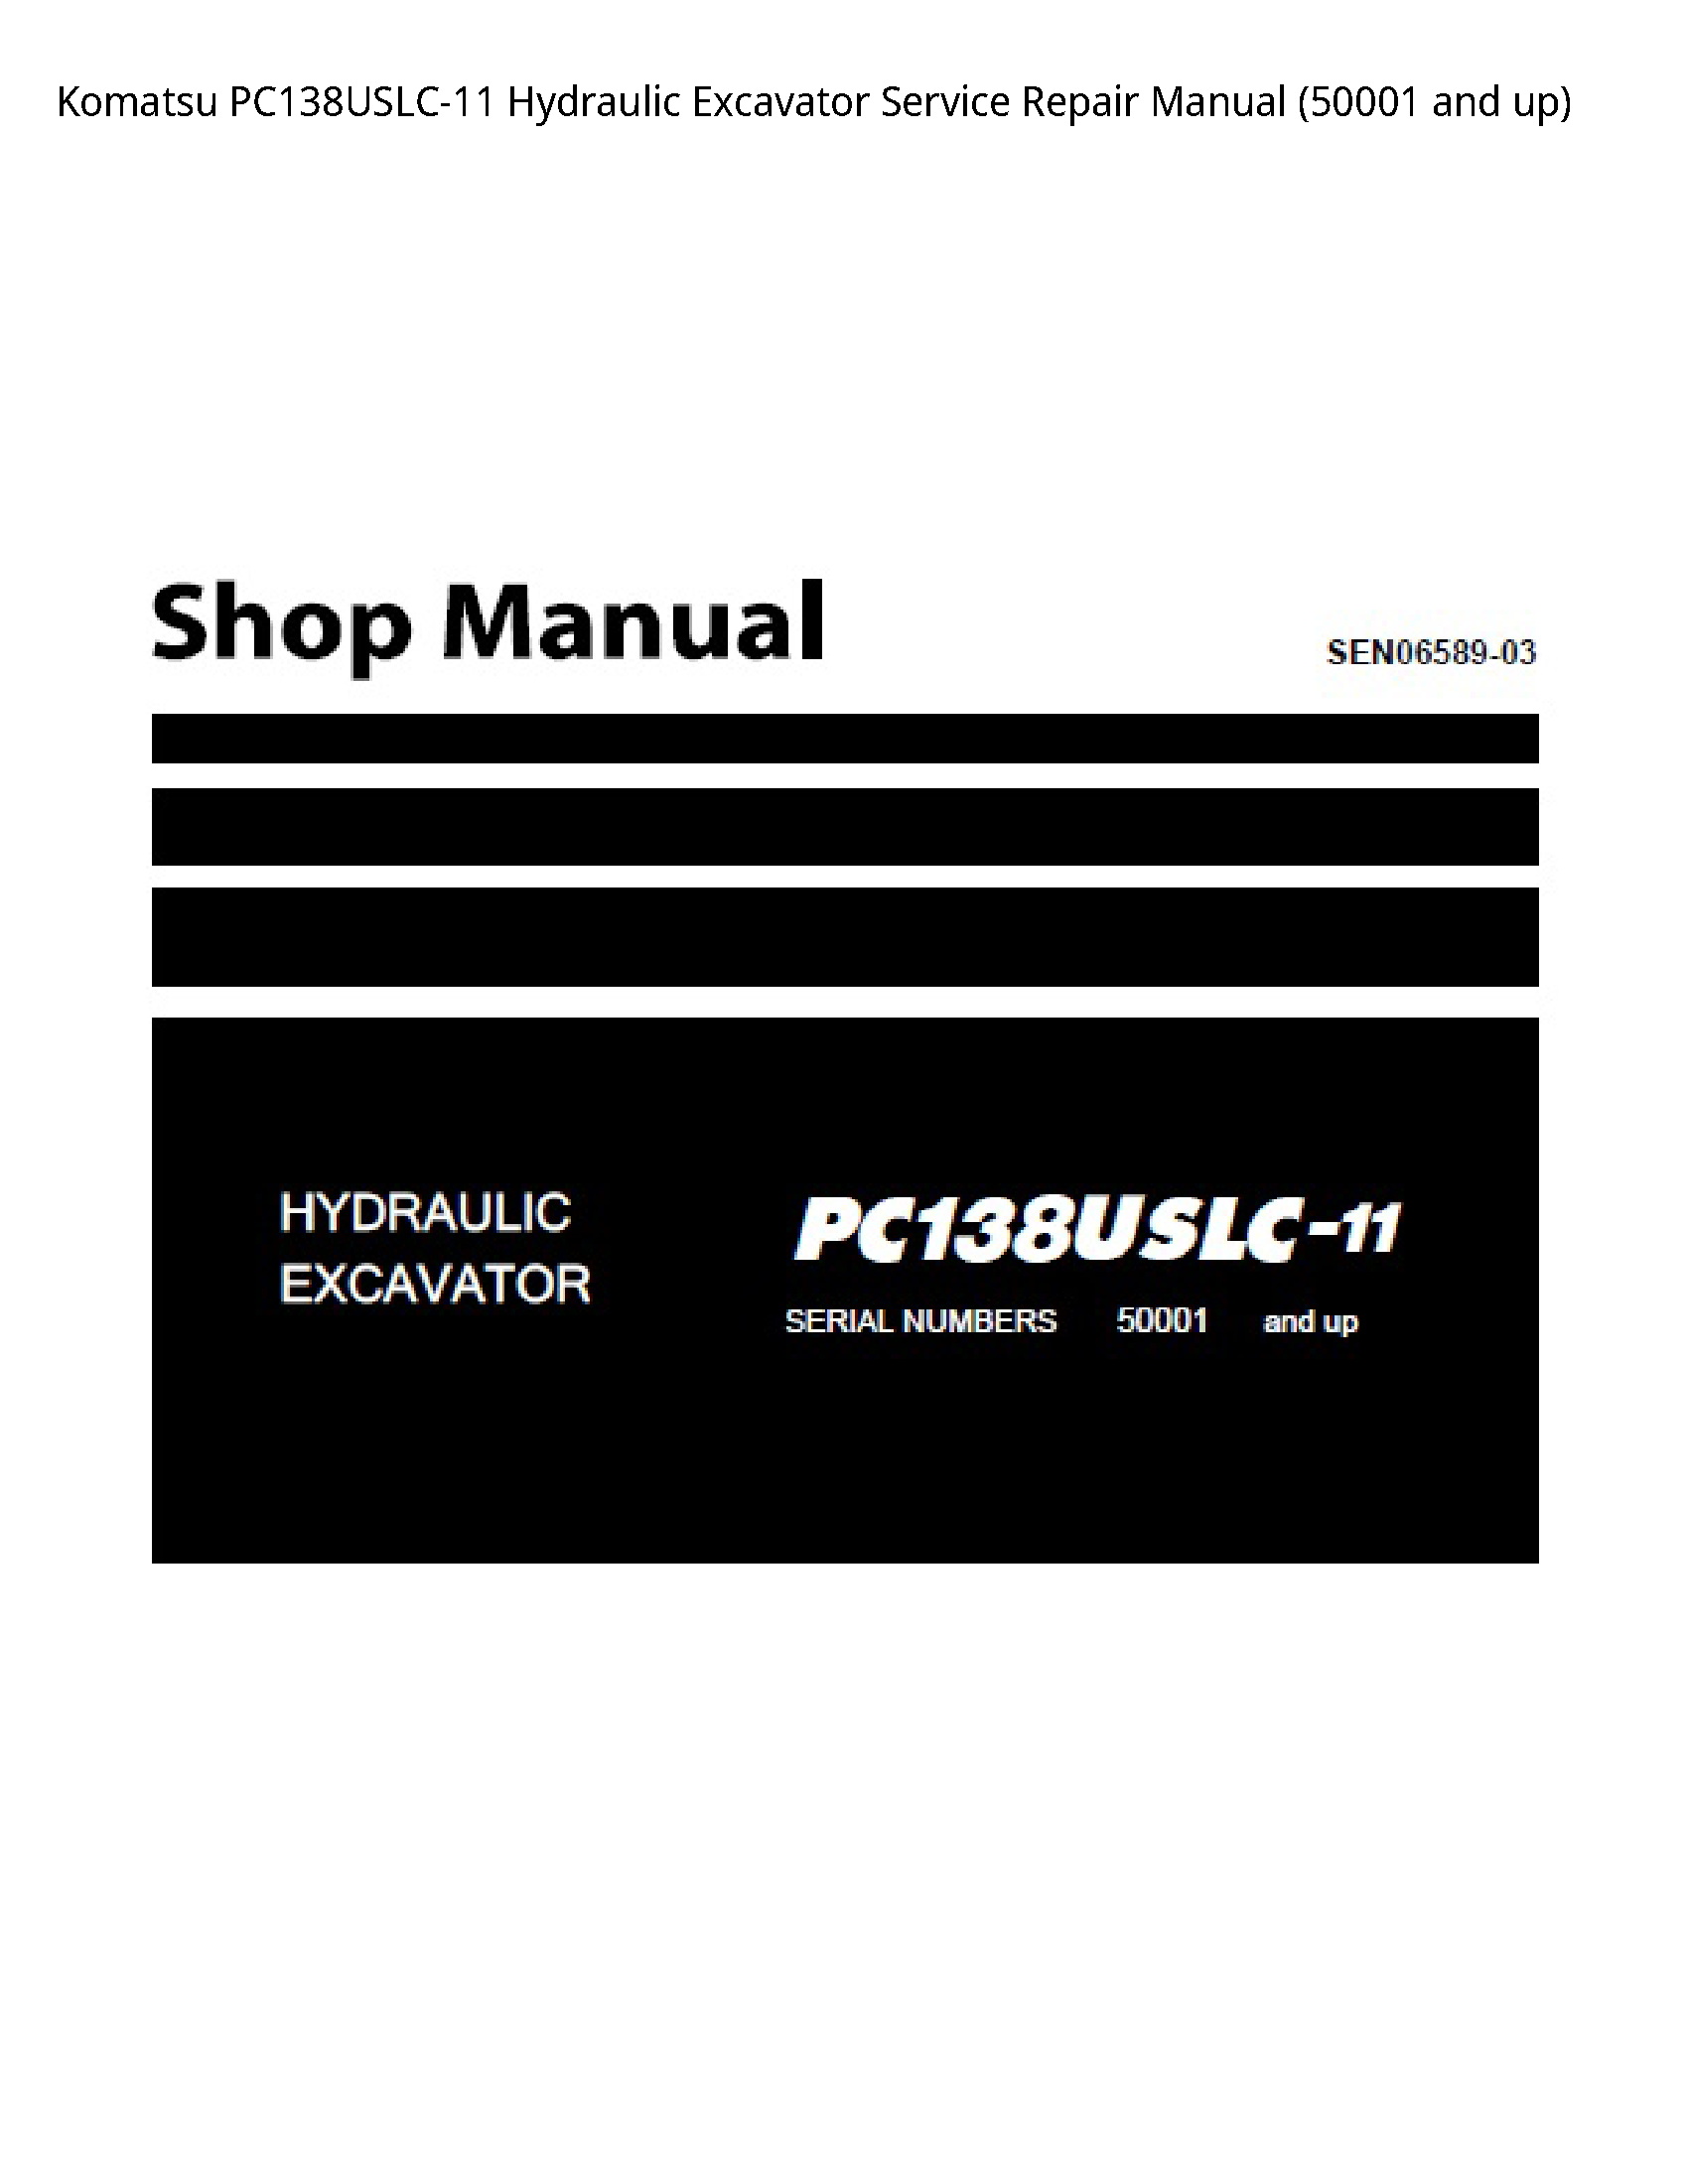 KOMATSU PC138USLC-11 Hydraulic Excavator manual